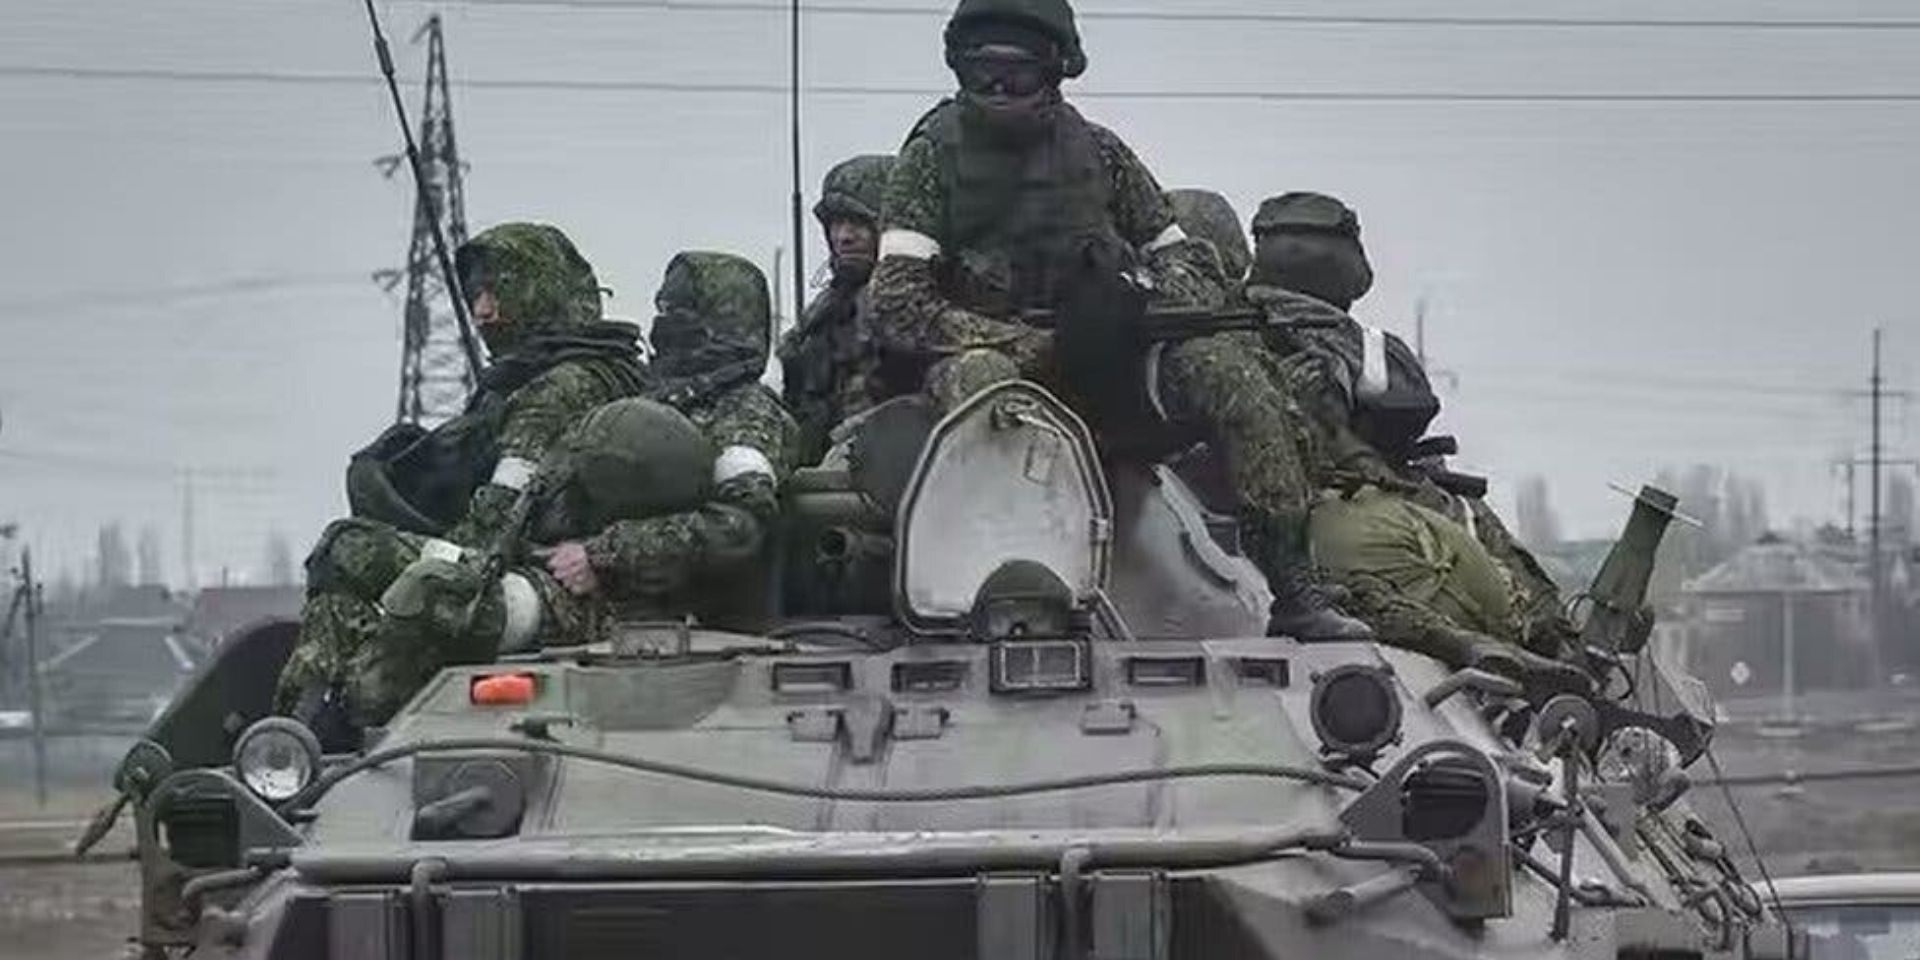 East Militar pasamontañas Asalto Por actualmente se utiliza en ejército ruso